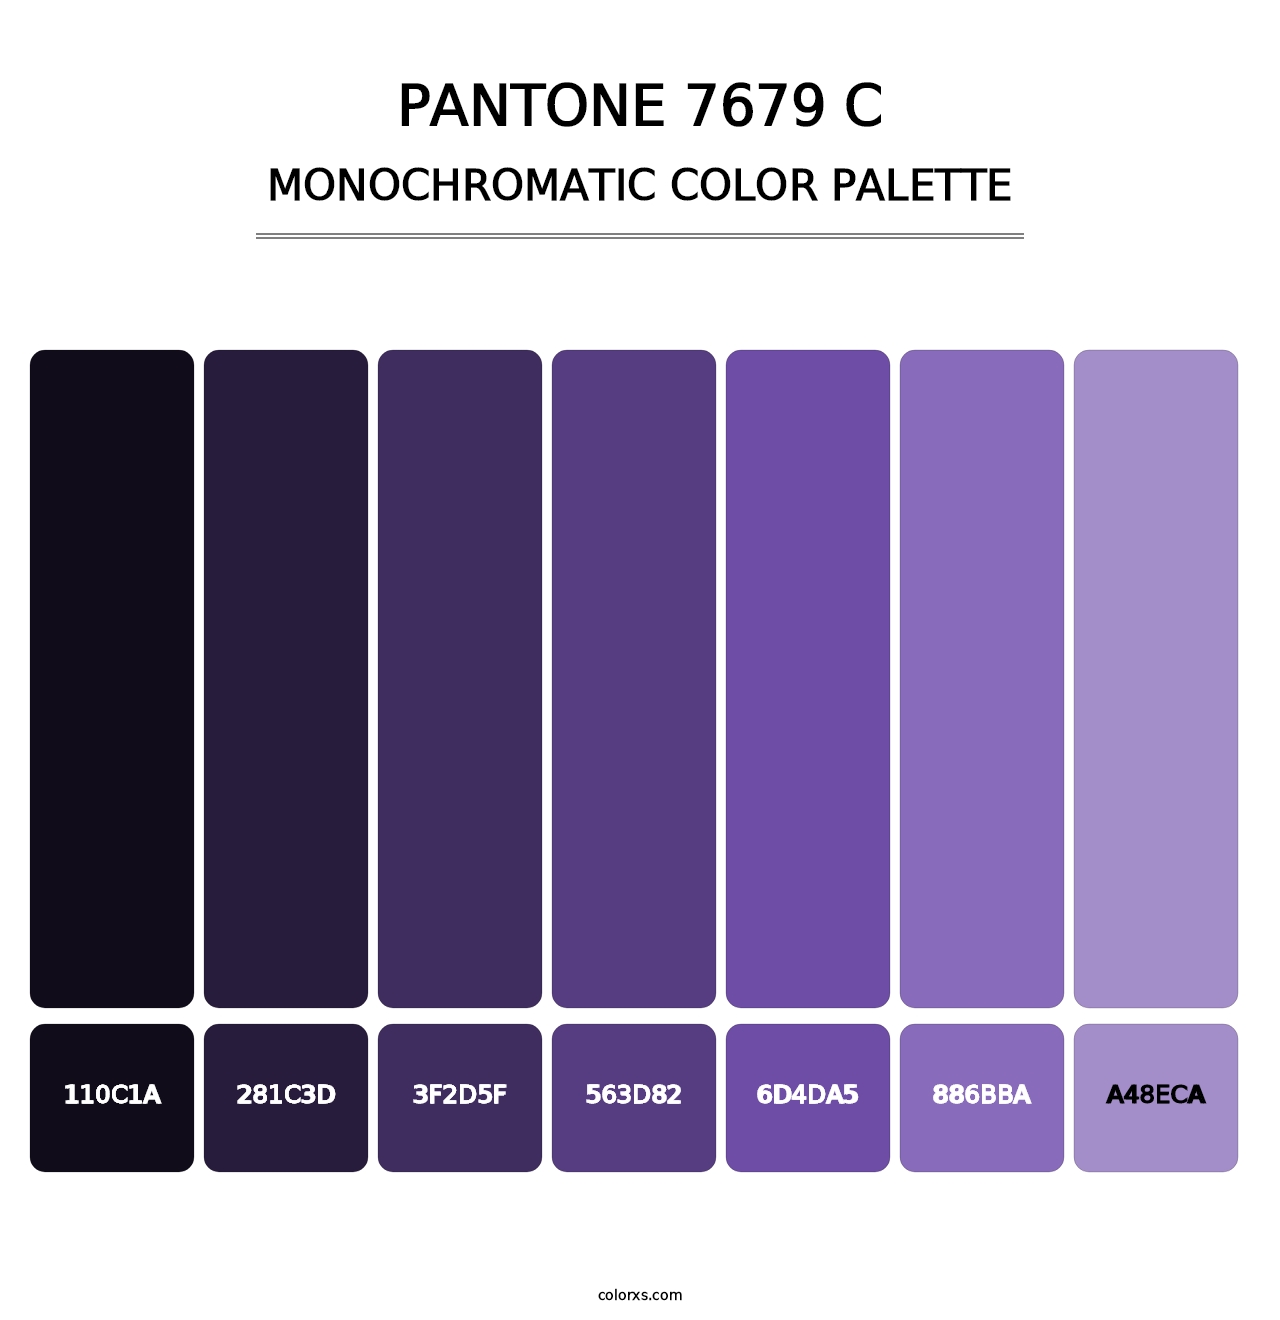 PANTONE 7679 C - Monochromatic Color Palette